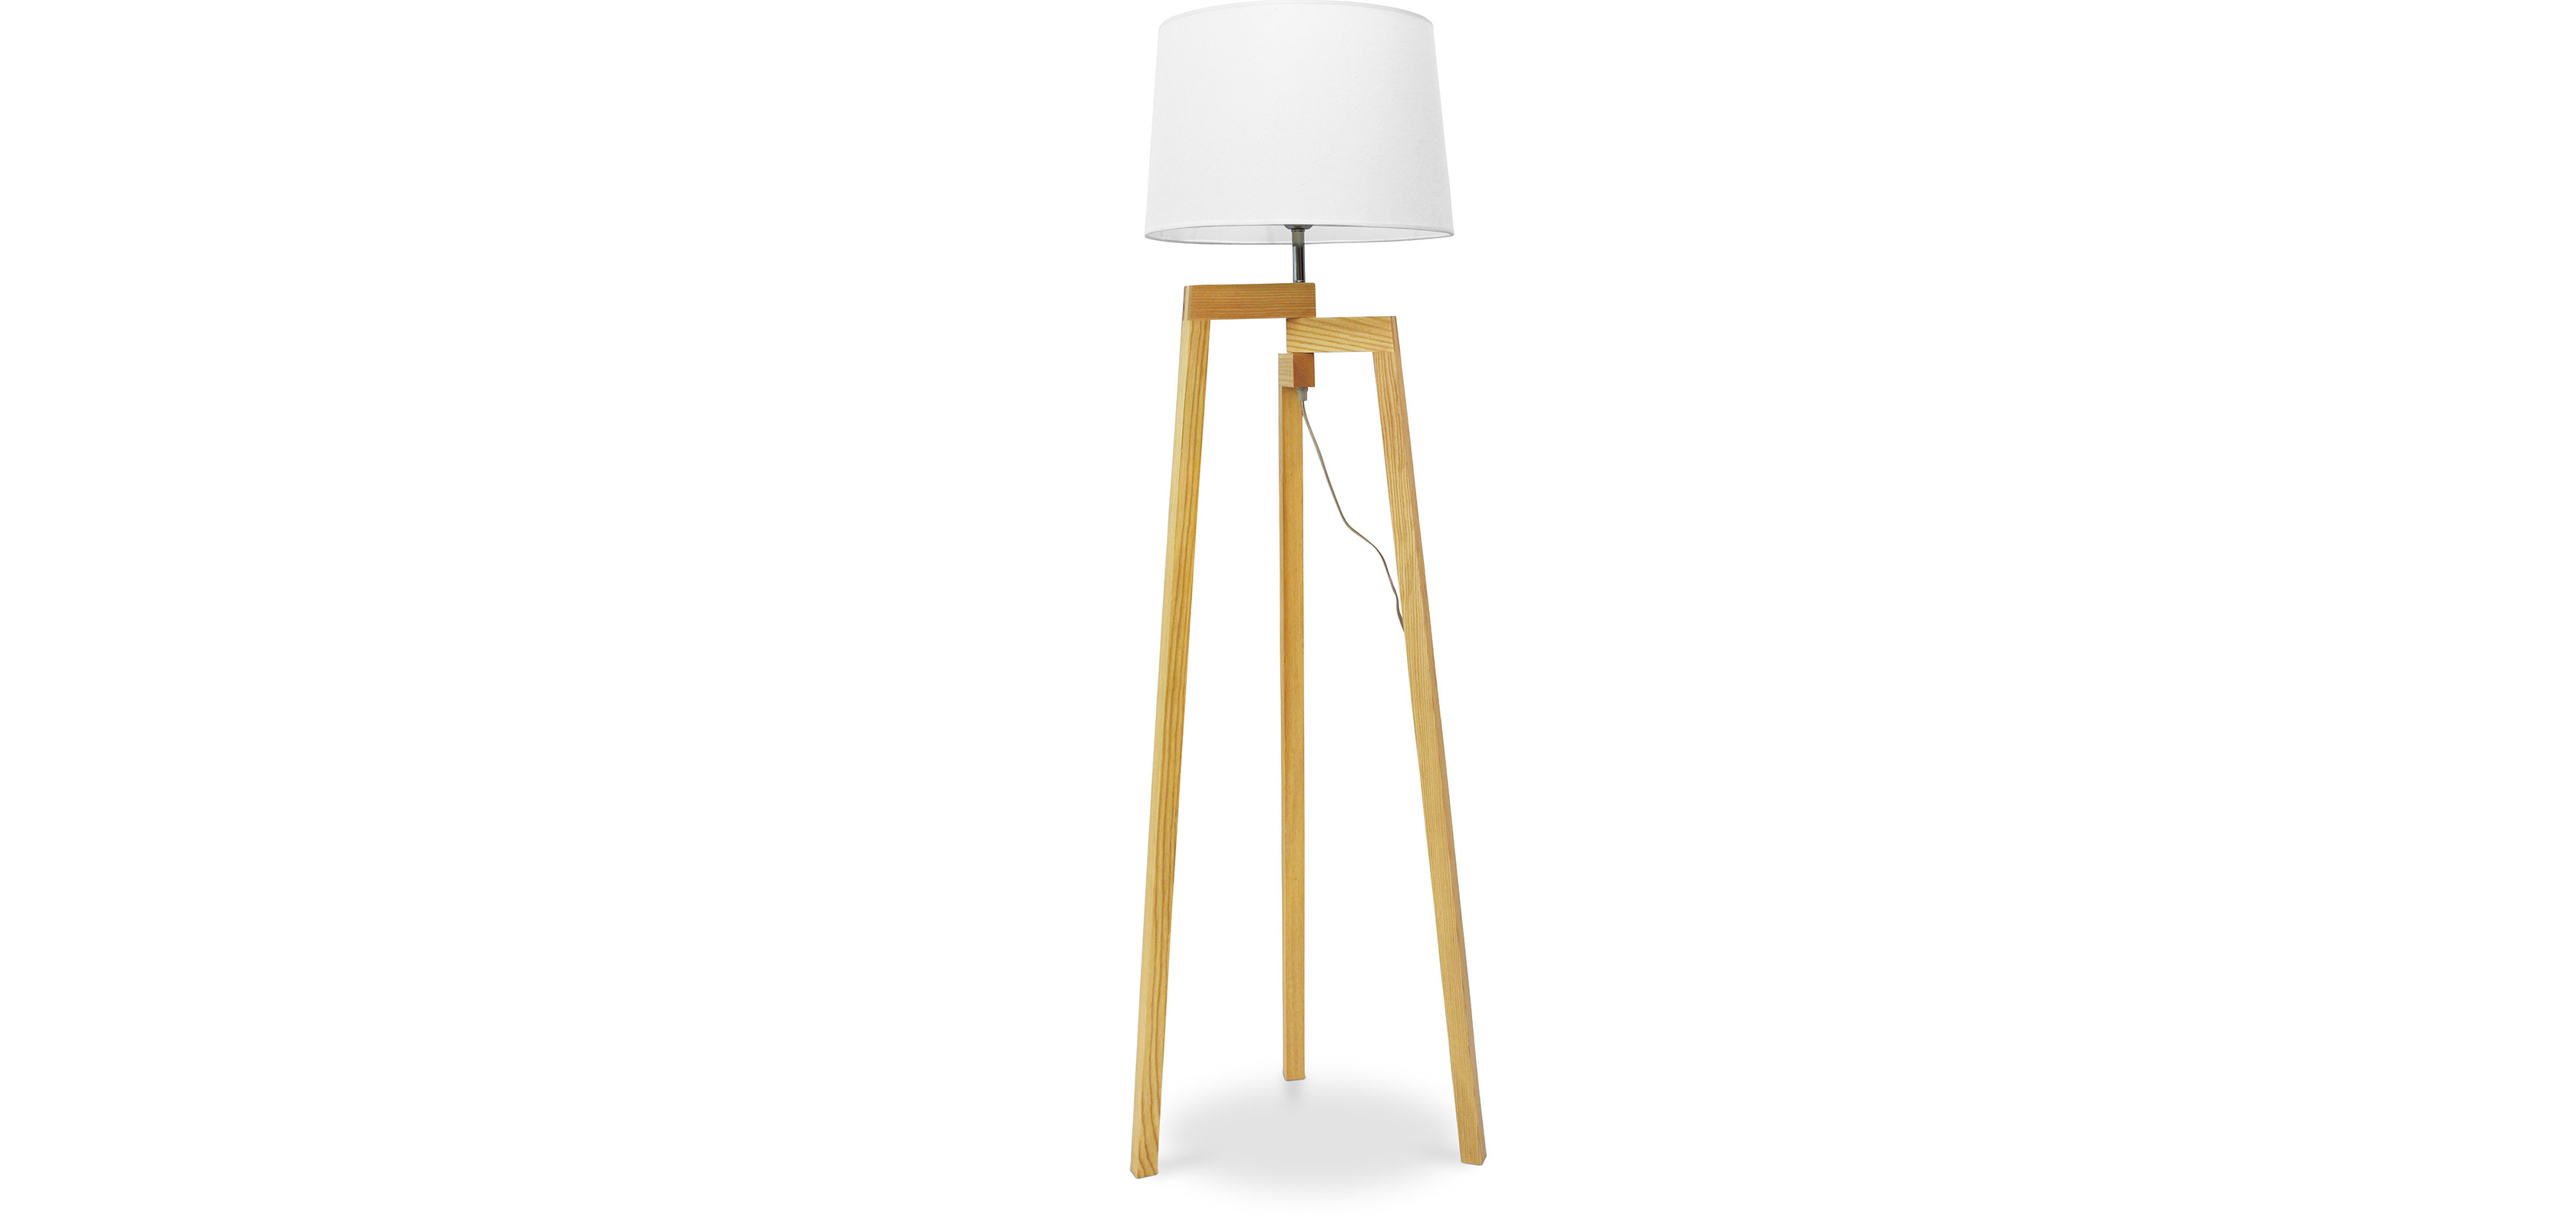 Dreibein Stehlampe - Wohnzimmerlampe im skandinavischen Design - Lon | Standleuchten